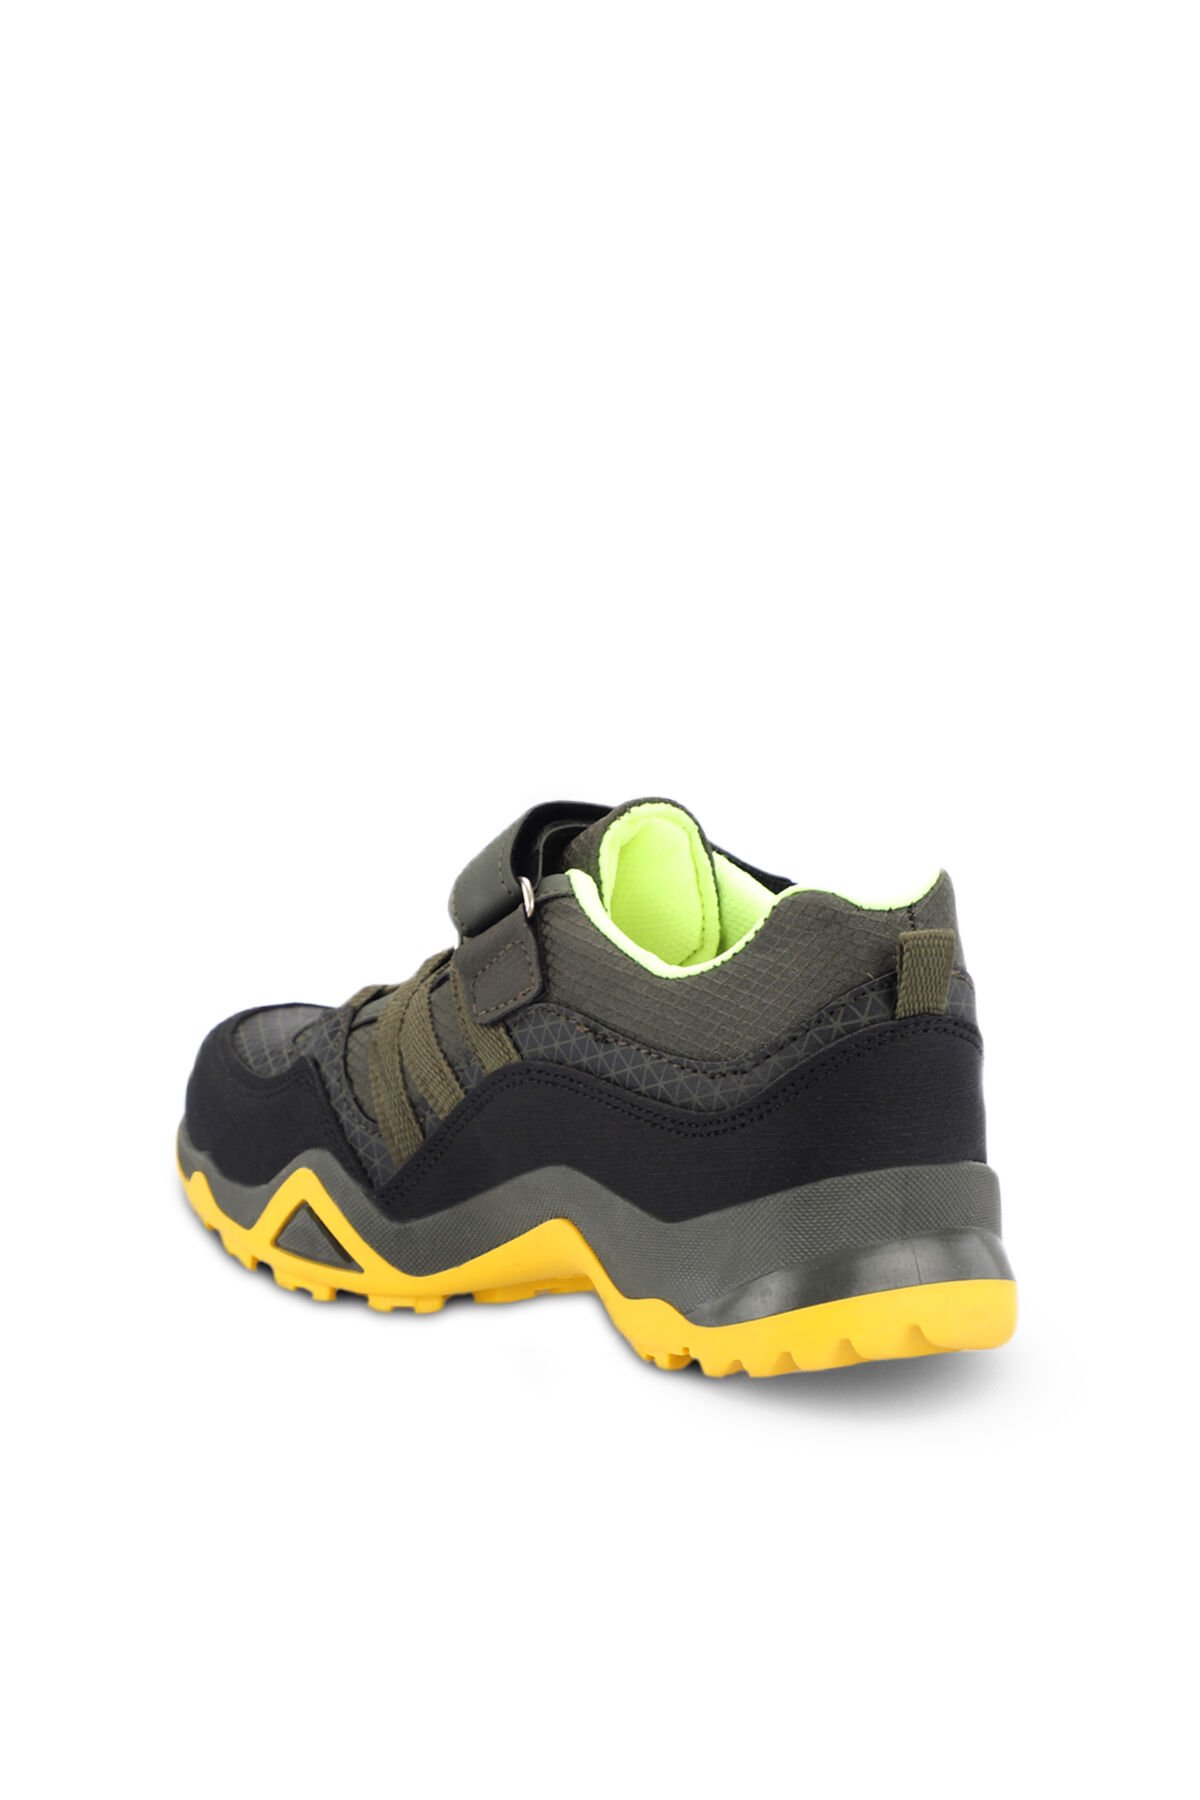 ALDONA Sneaker Erkek Çocuk Ayakkabı Haki - Thumbnail